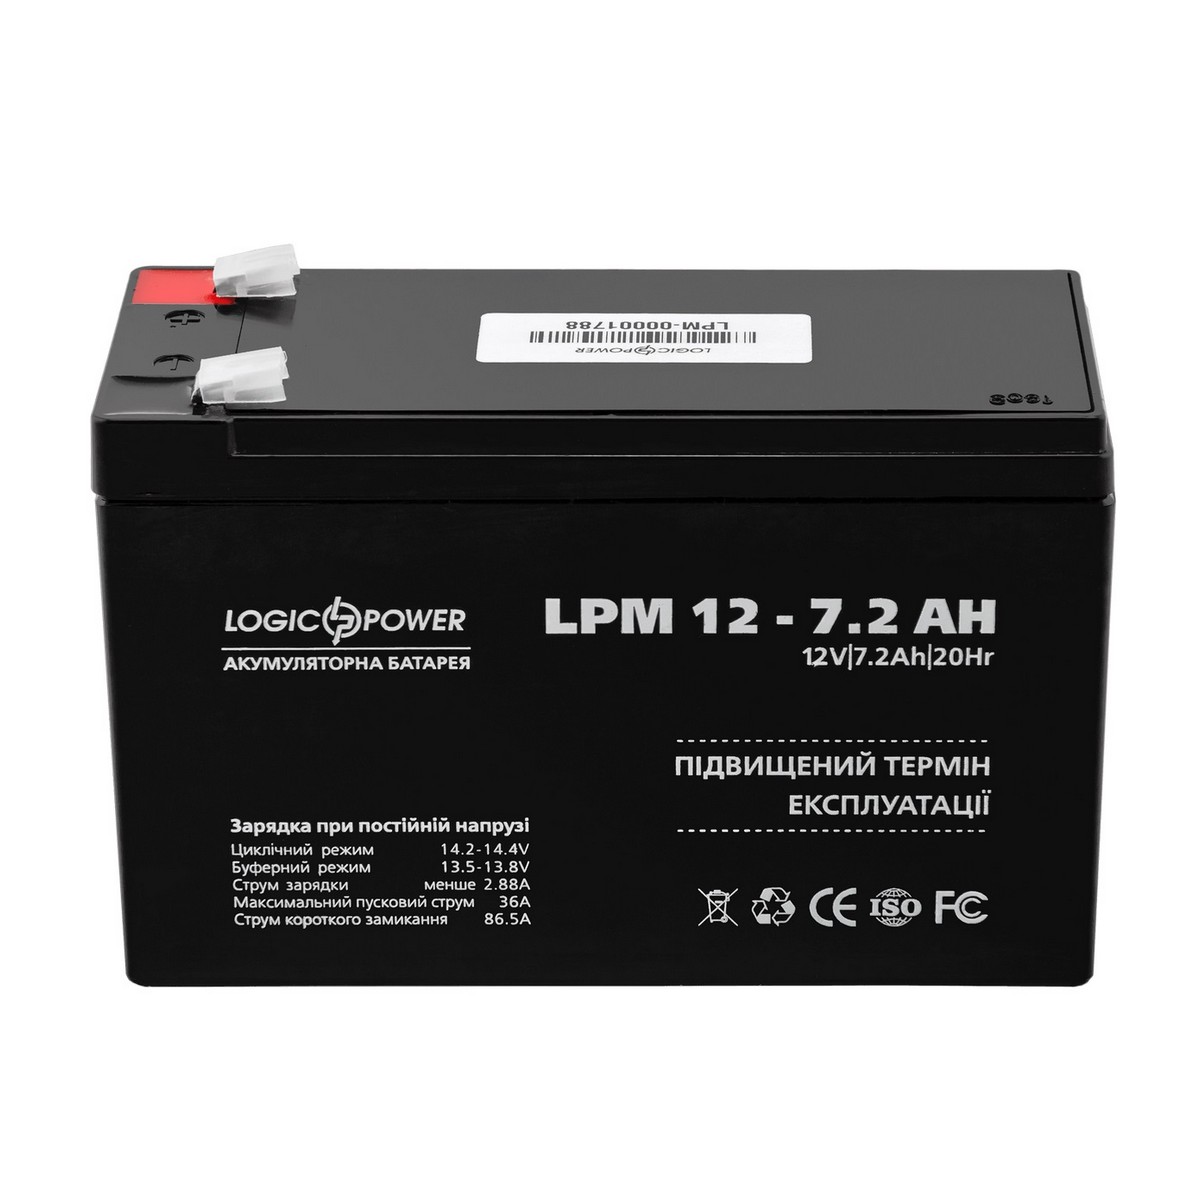 Аккумуляторная батарея LogicPower 12V 7.2AH (LPM 12-7.2 AH) AGM